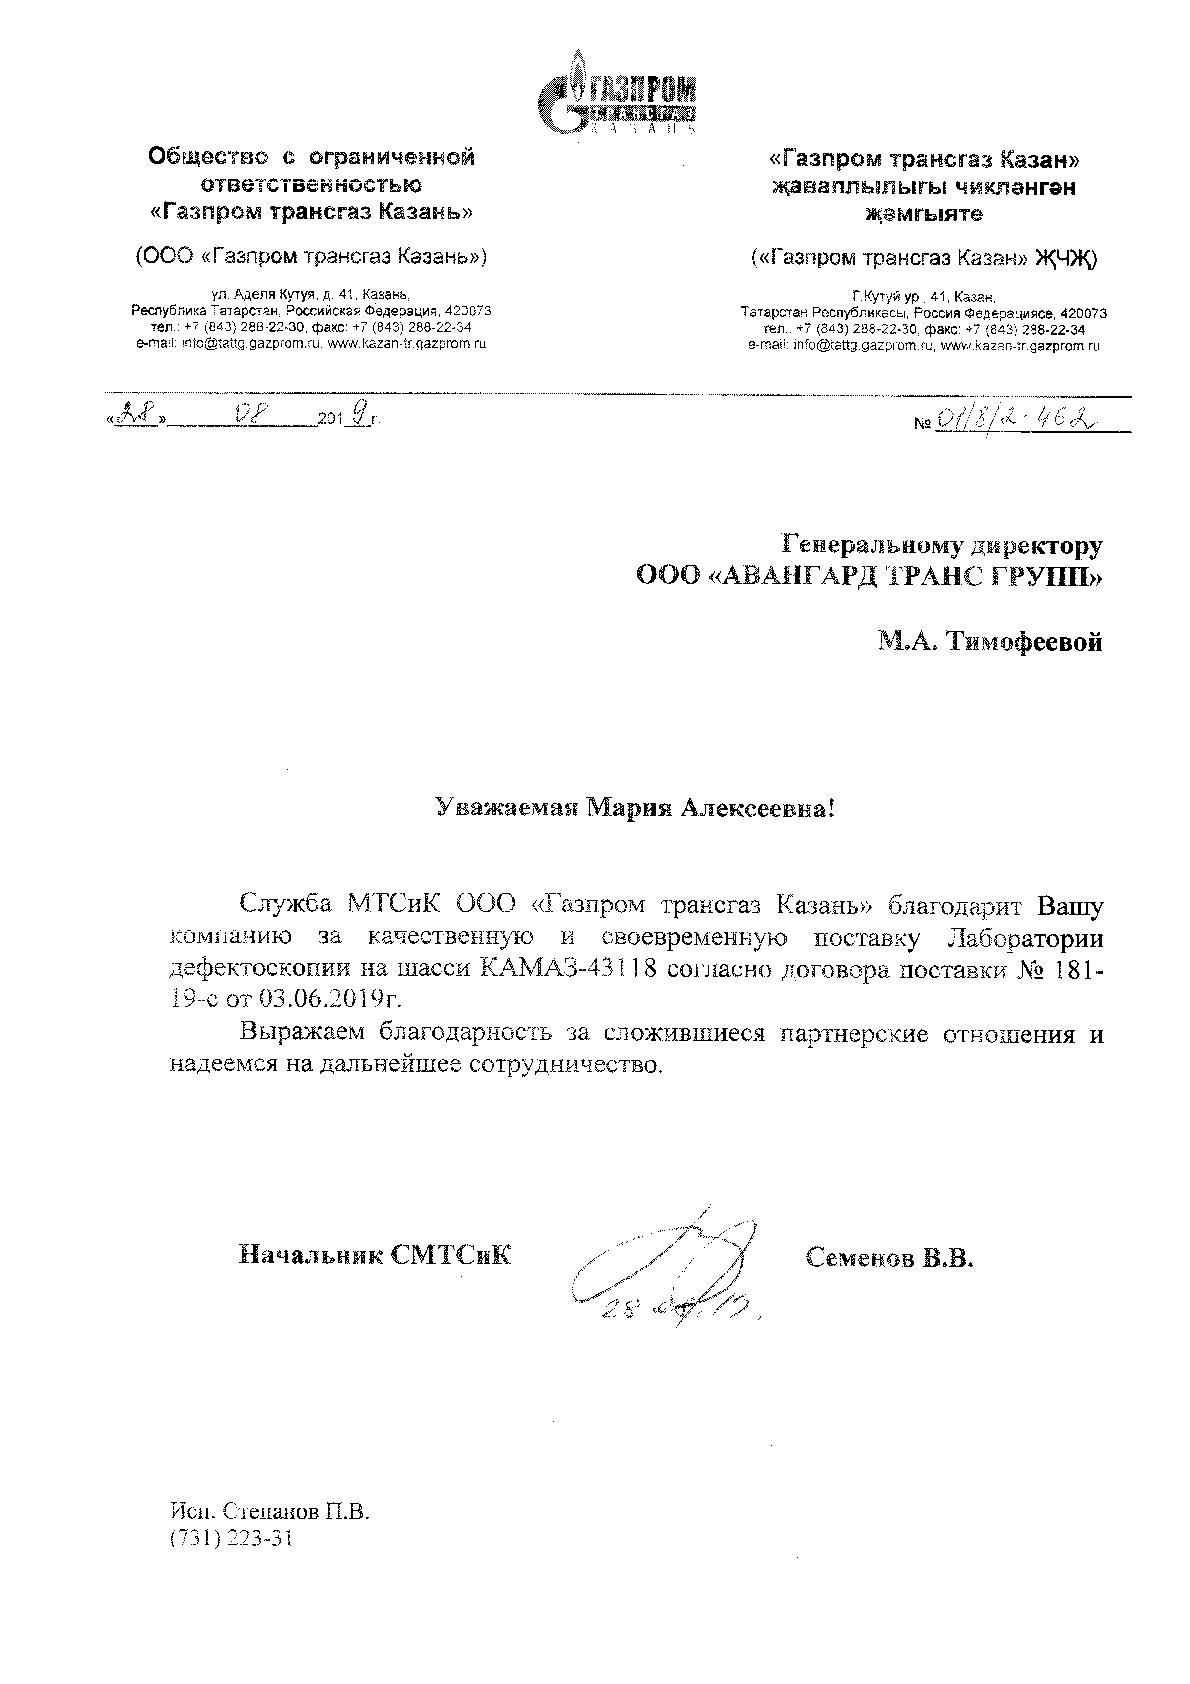 Отзыв к Договору № 181-19-с от 03.06.2019г. от Газпром трансгаз Казань